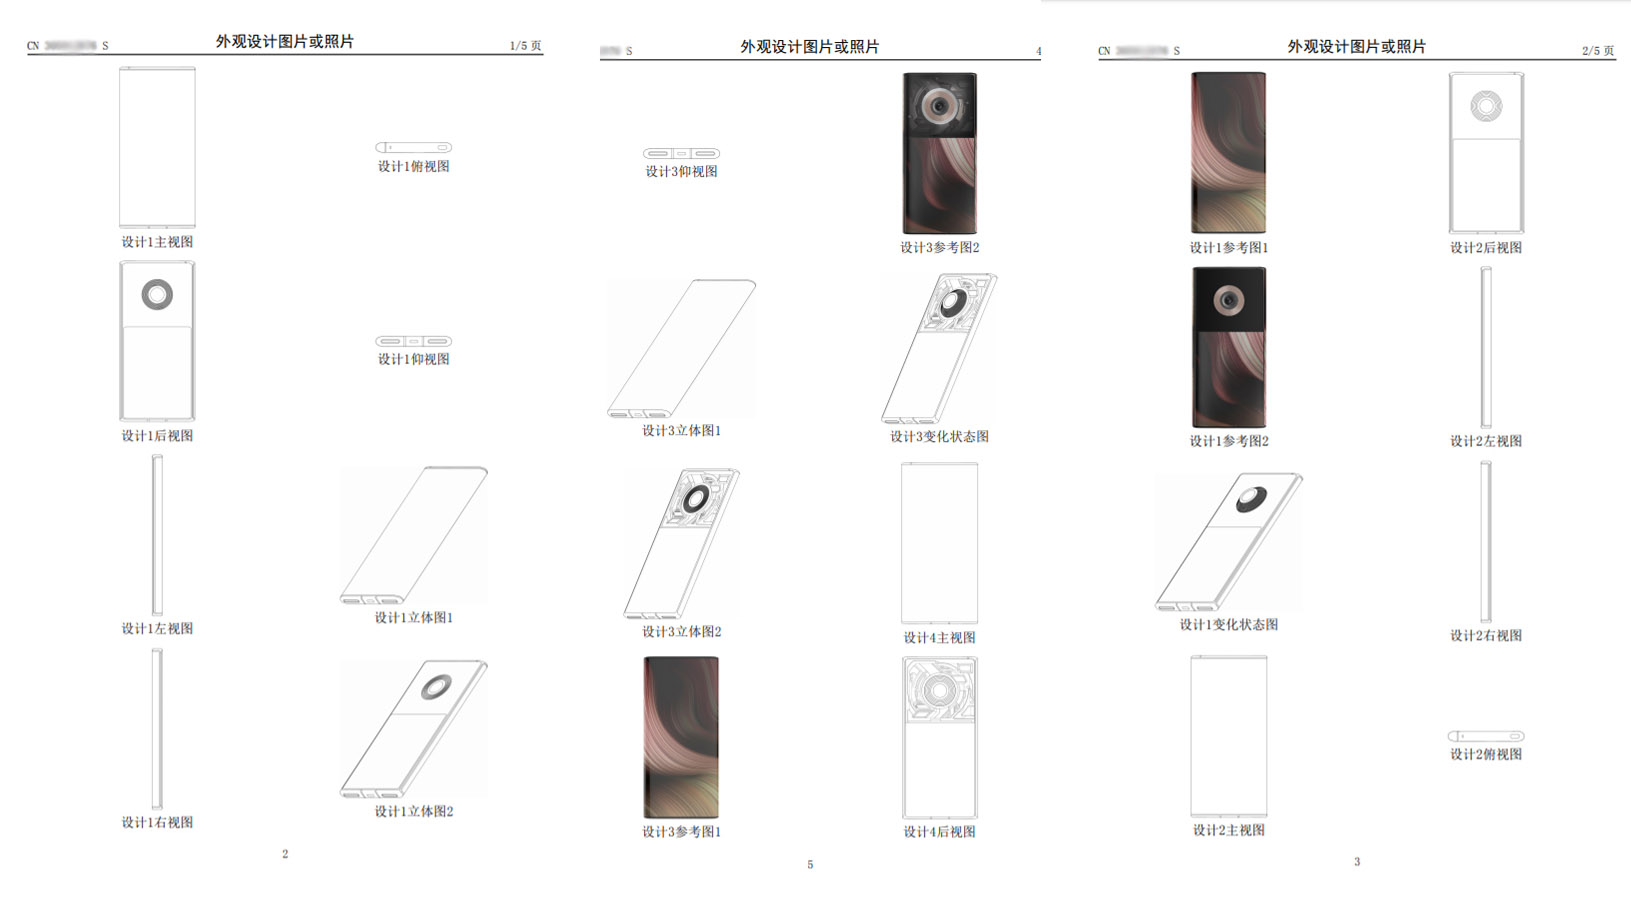 Lộ bằng sáng chế cho
thấy Xiaomi đang nghiên cứu một chiếc smartphone gần như
không viền với camera 108MP